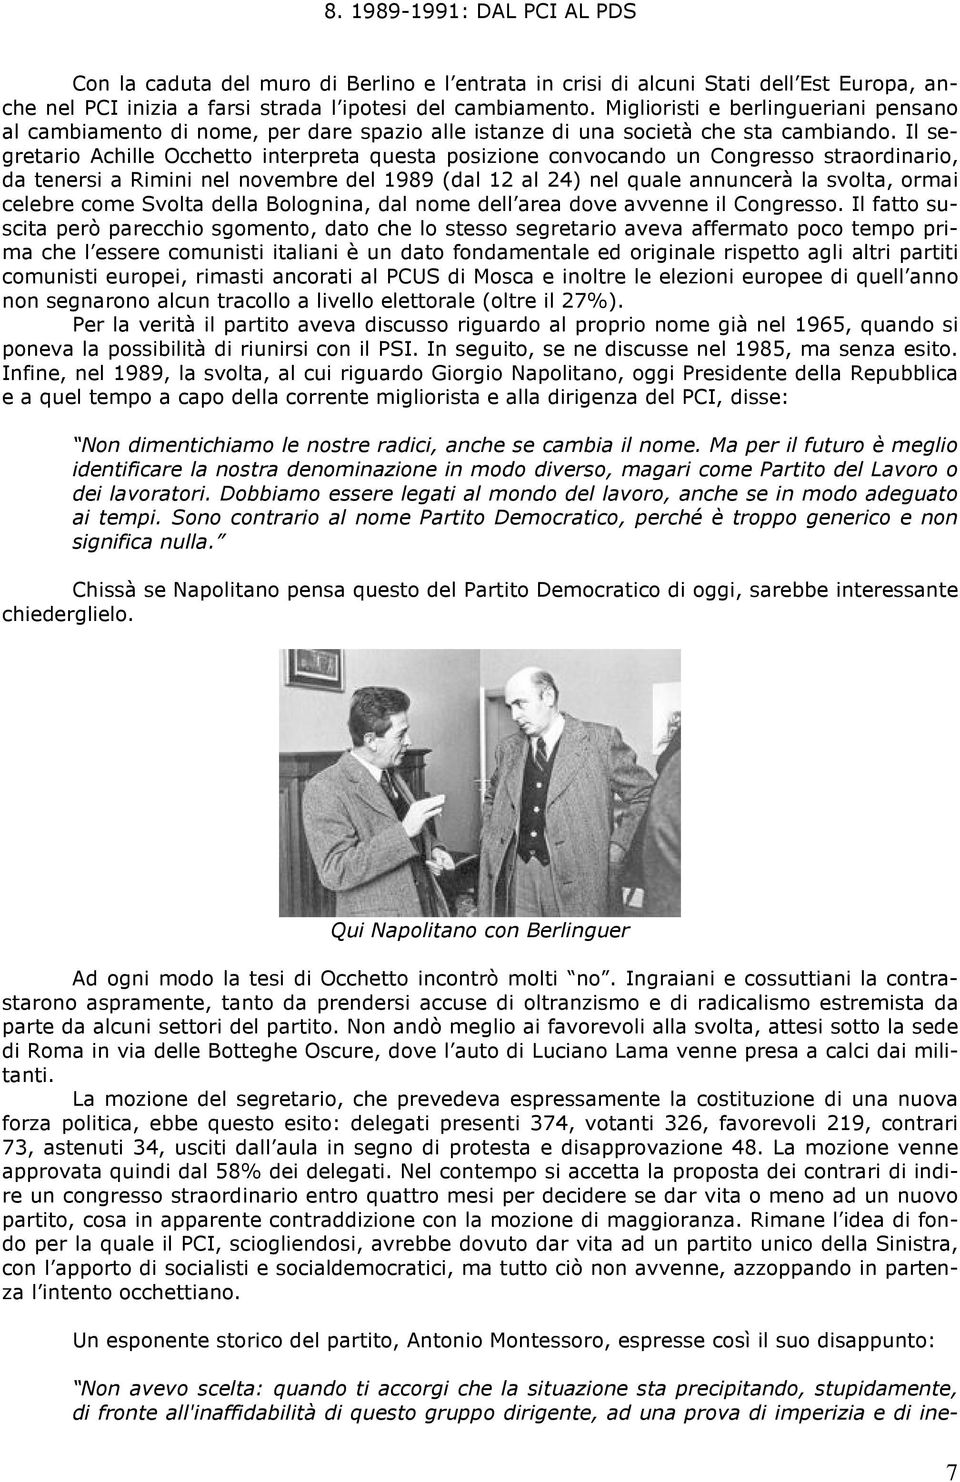 Il segretario Achille Occhetto interpreta questa posizione convocando un Congresso straordinario, da tenersi a Rimini nel novembre del 1989 (dal 12 al 24) nel quale annuncerà la svolta, ormai celebre